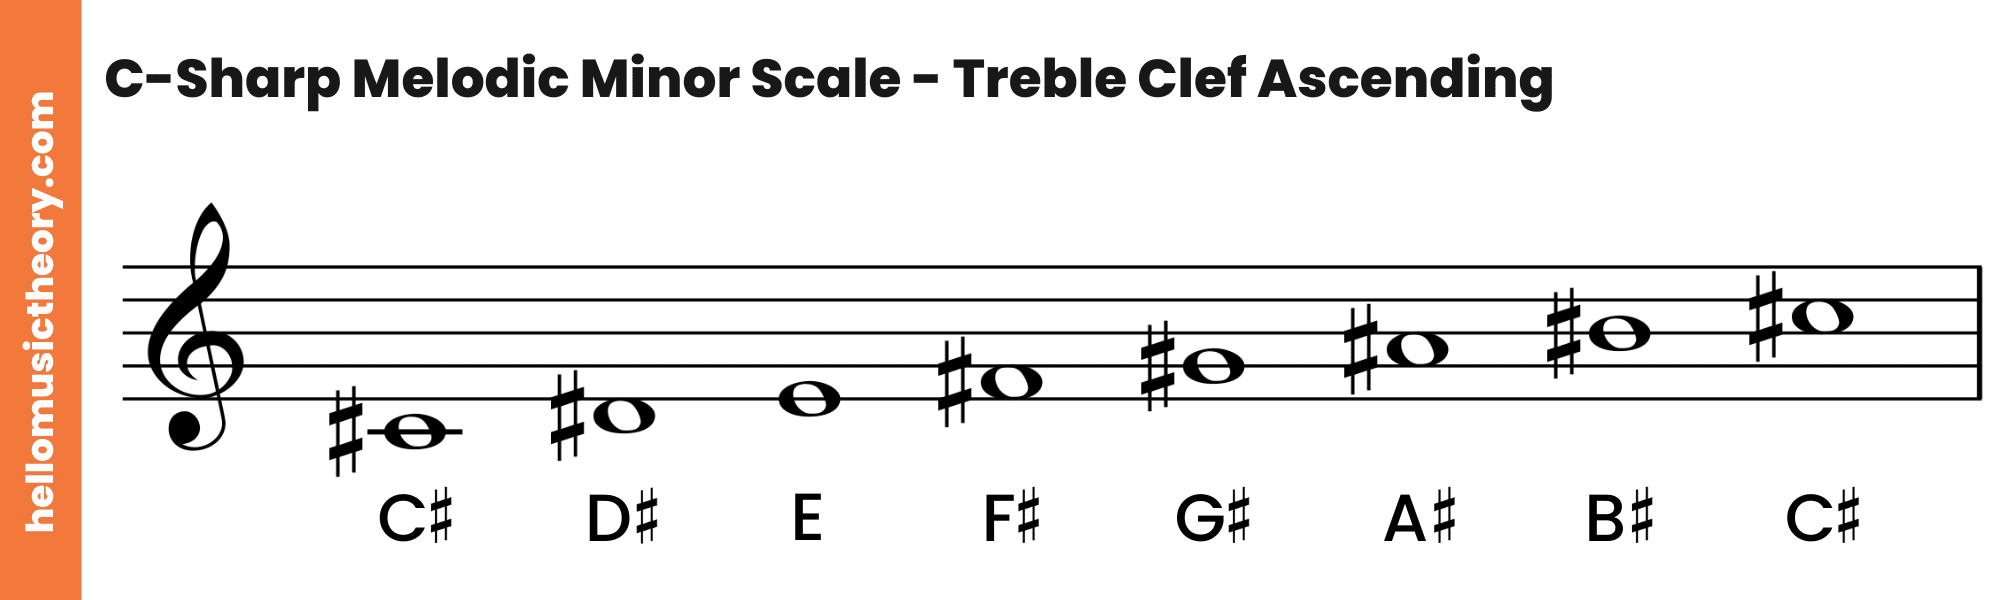 C-Sharp Melodic Minor Scale Treble Clef Ascending